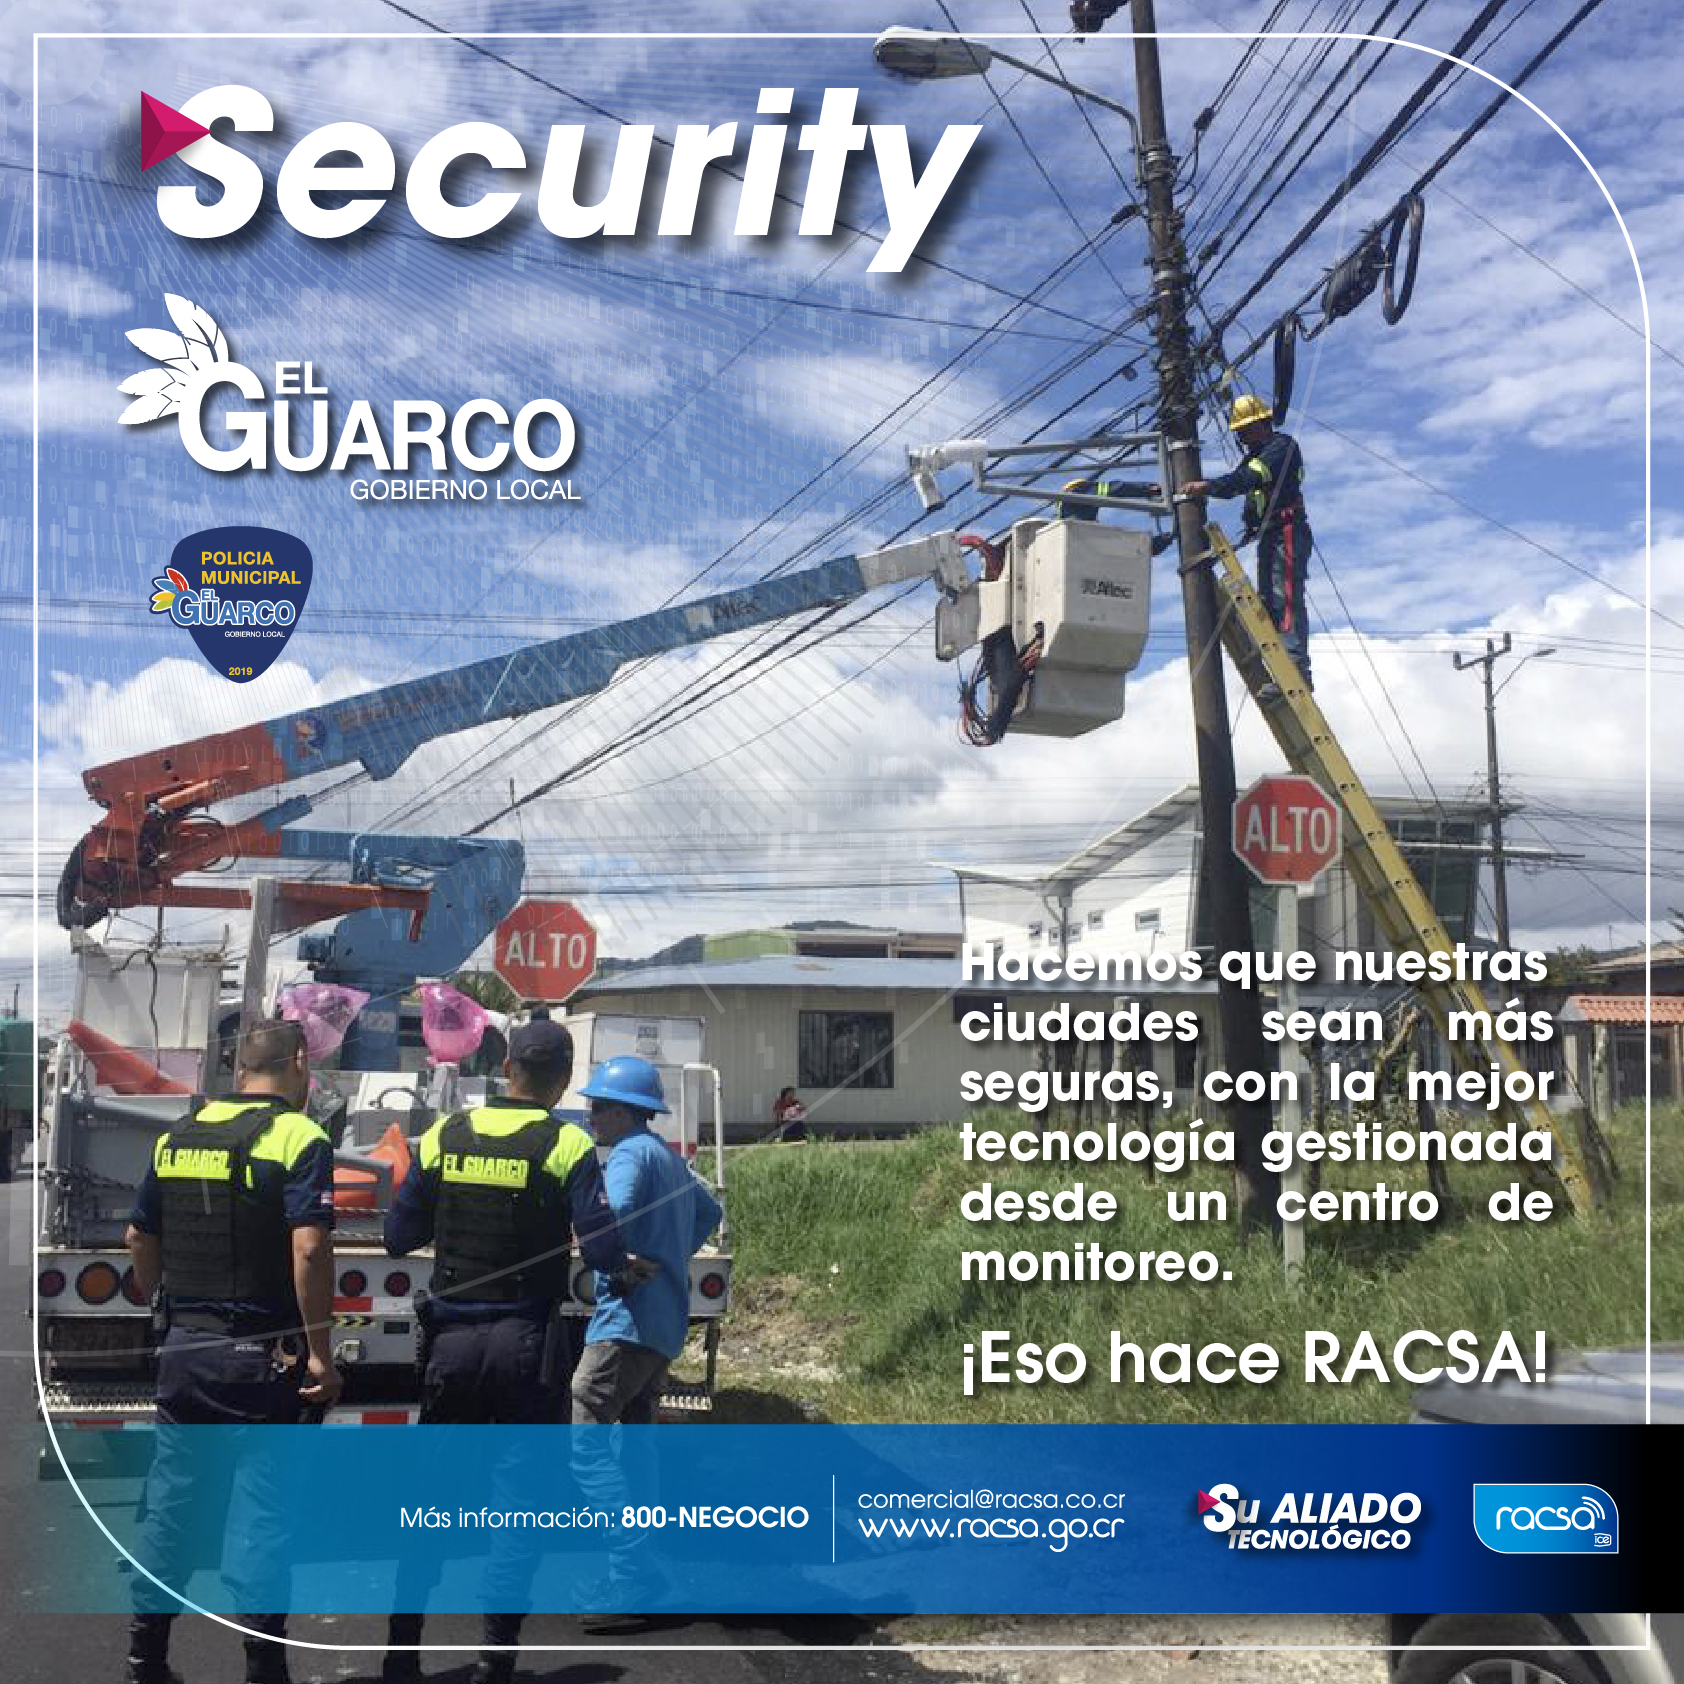 Security RRSS Guarco 1_Mesa de trabajo 1 copia.jpg